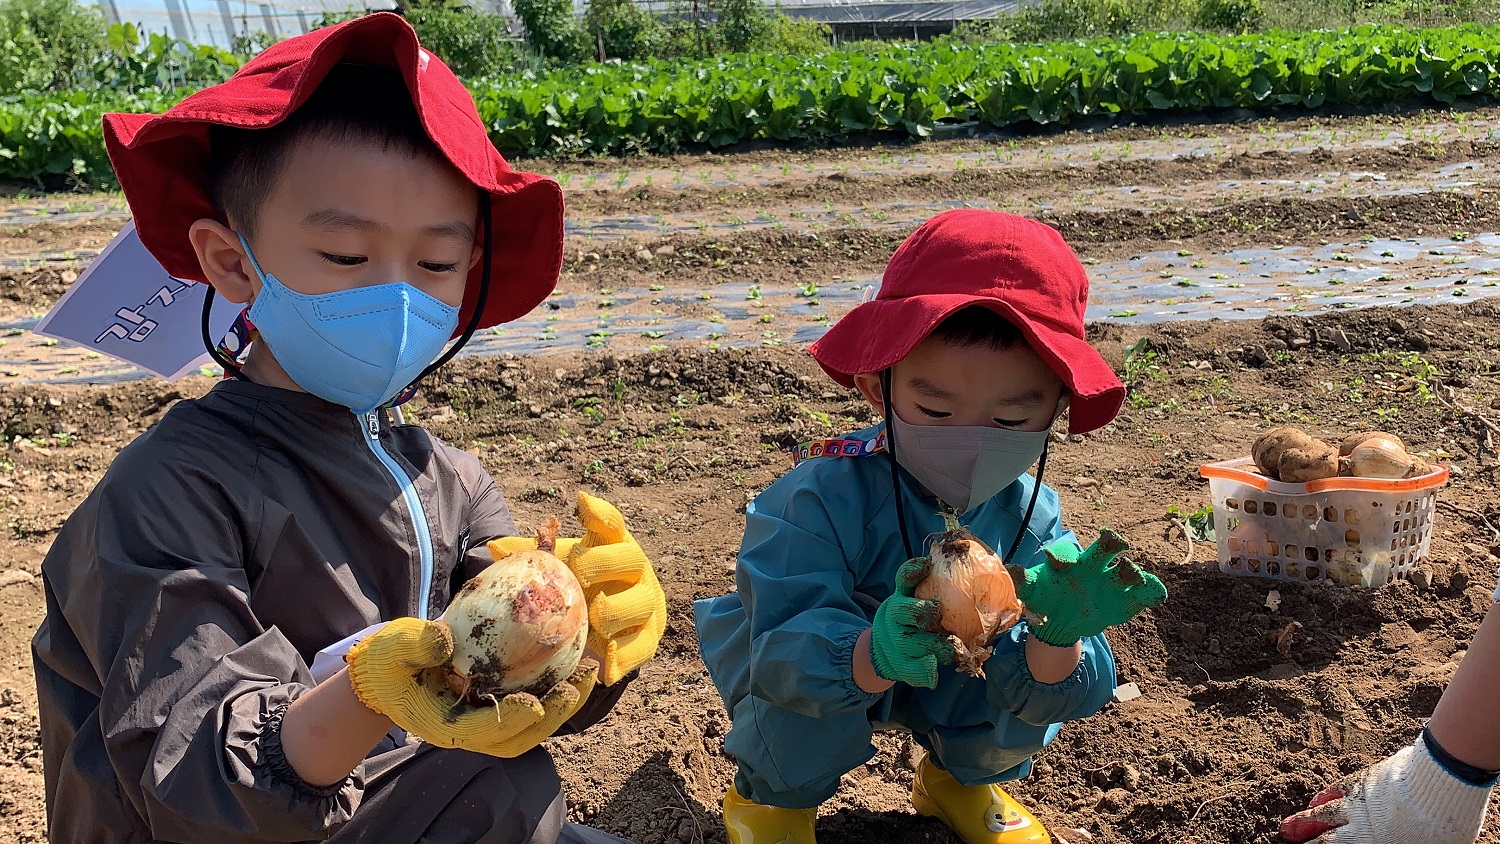 ‘땅속 보물찾기 탐험대’ 프로그램에 참가한 어린이들이 채소를 수확하고 있다. 
(사진제공: 대구가톨릭대 영천시어린이급식관리지원센터)